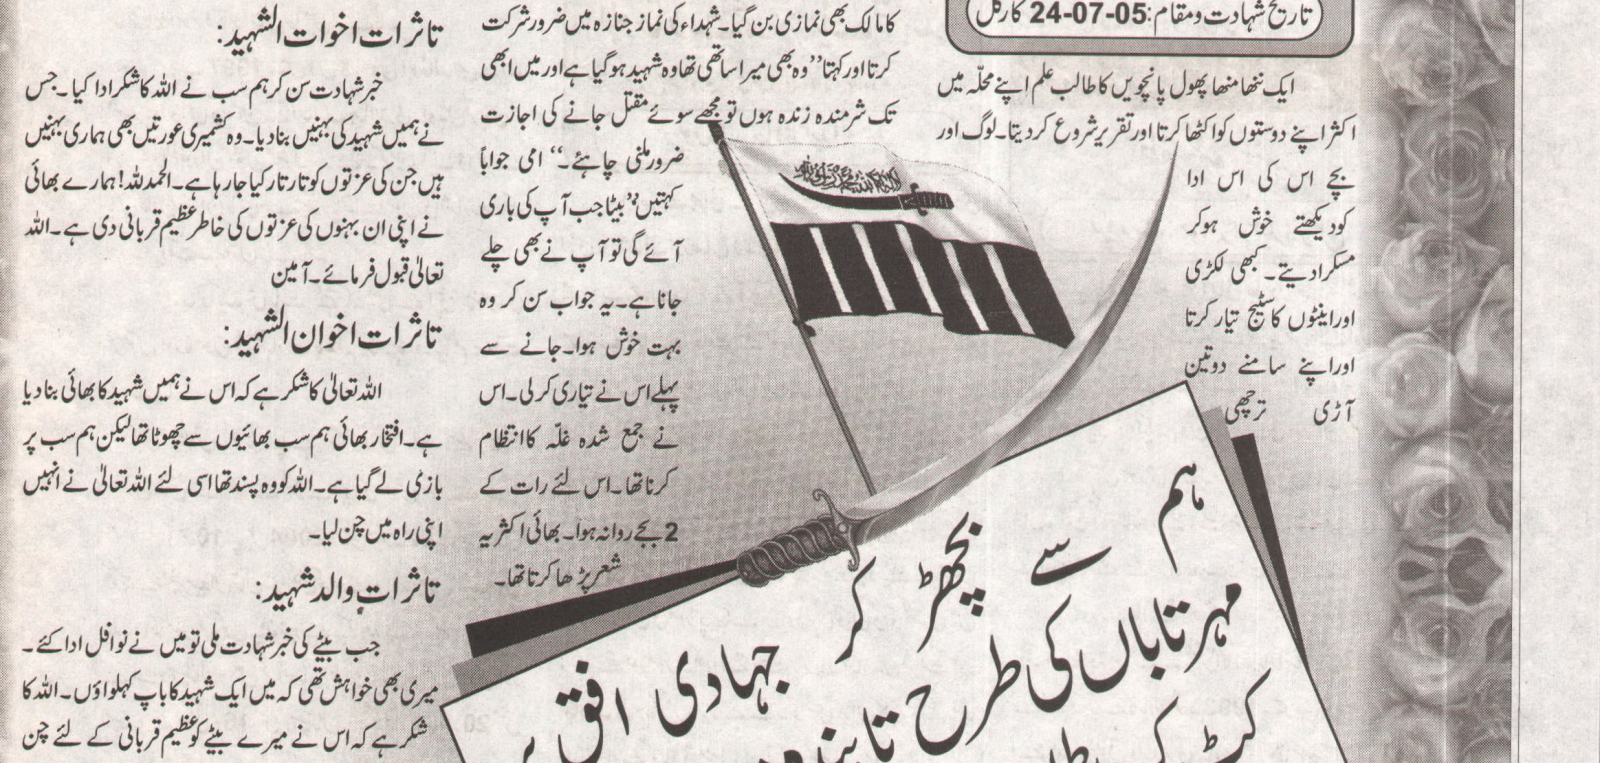 Lashkar-e-Taiba document with flag and sword